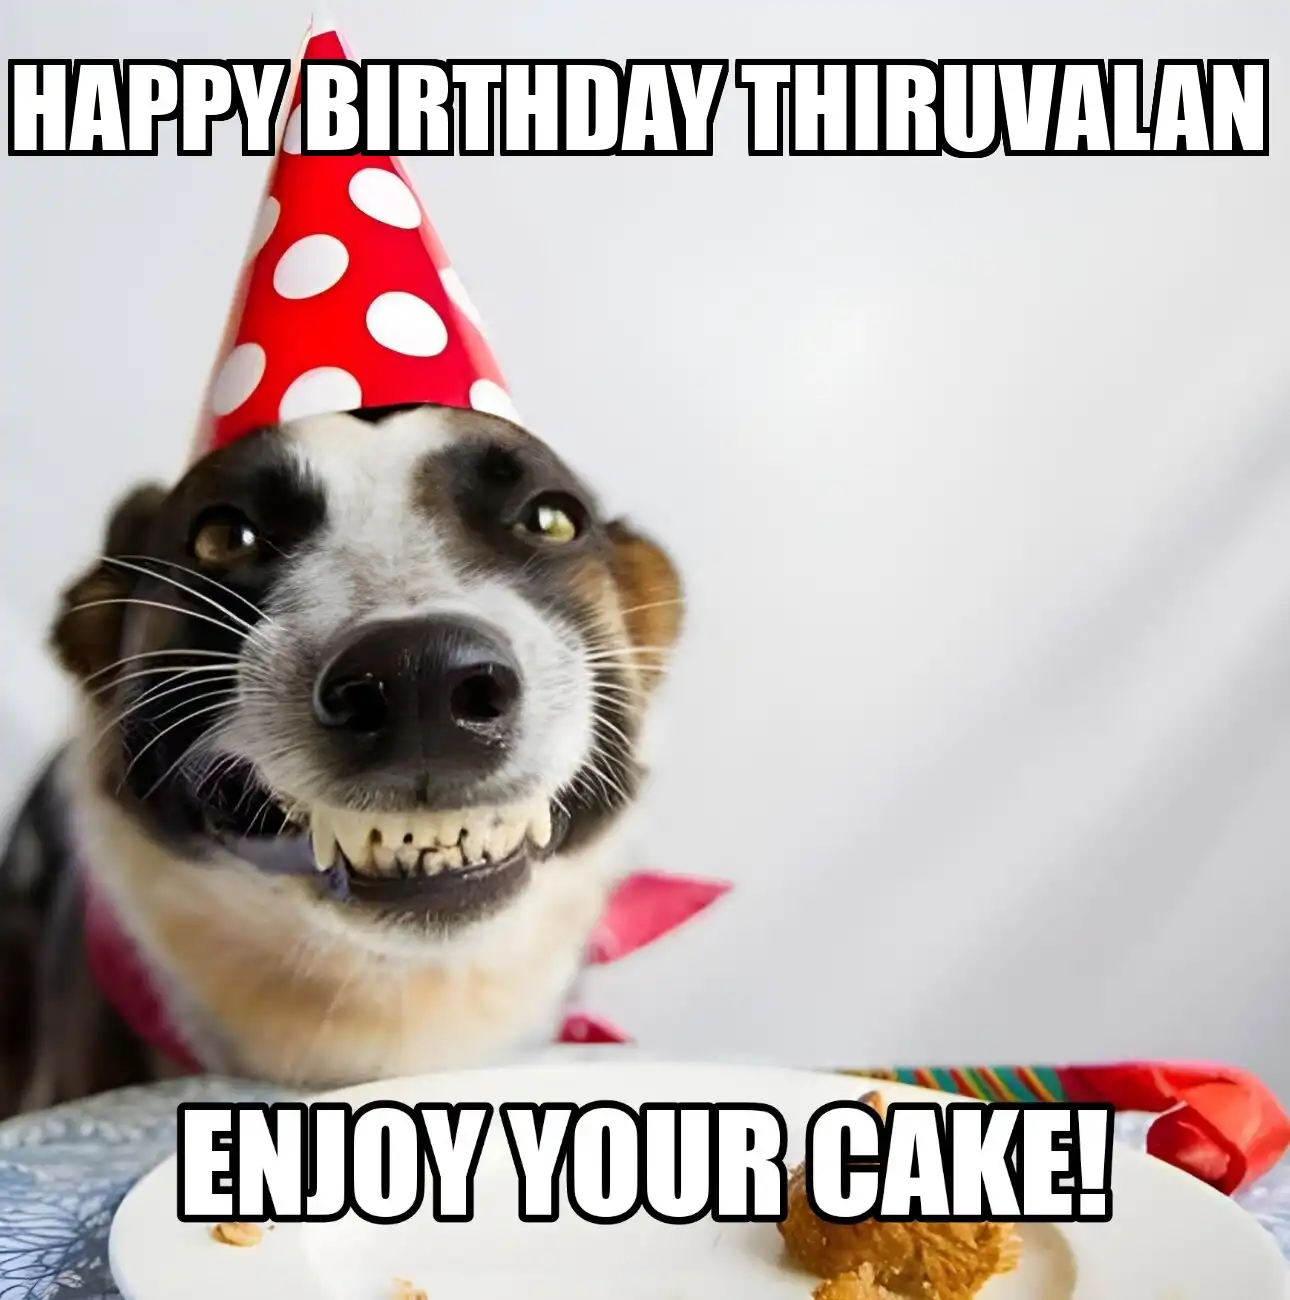 Happy Birthday Thiruvalan Enjoy Your Cake Dog Meme